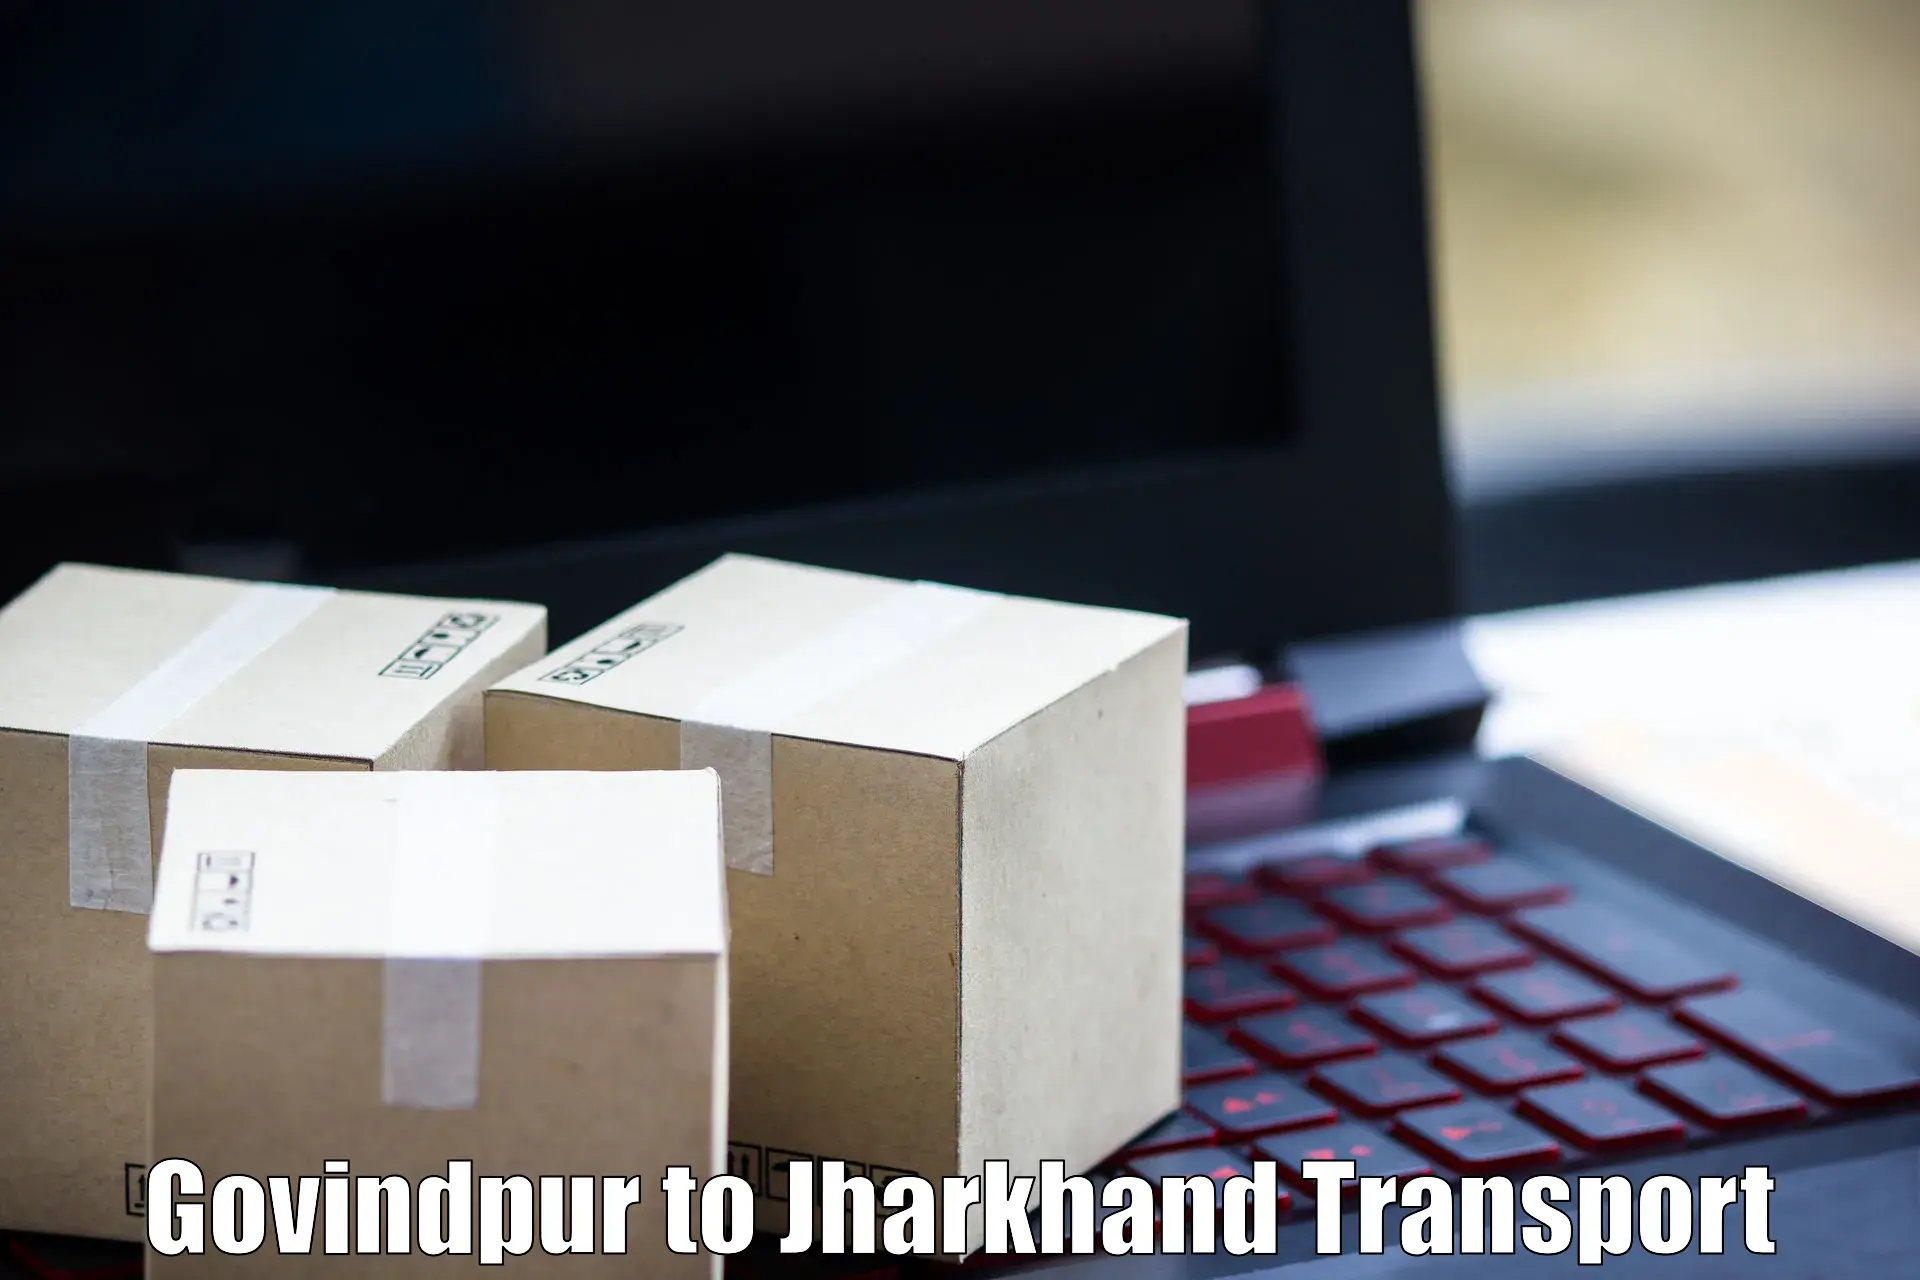 Online transport service Govindpur to Ghatshila